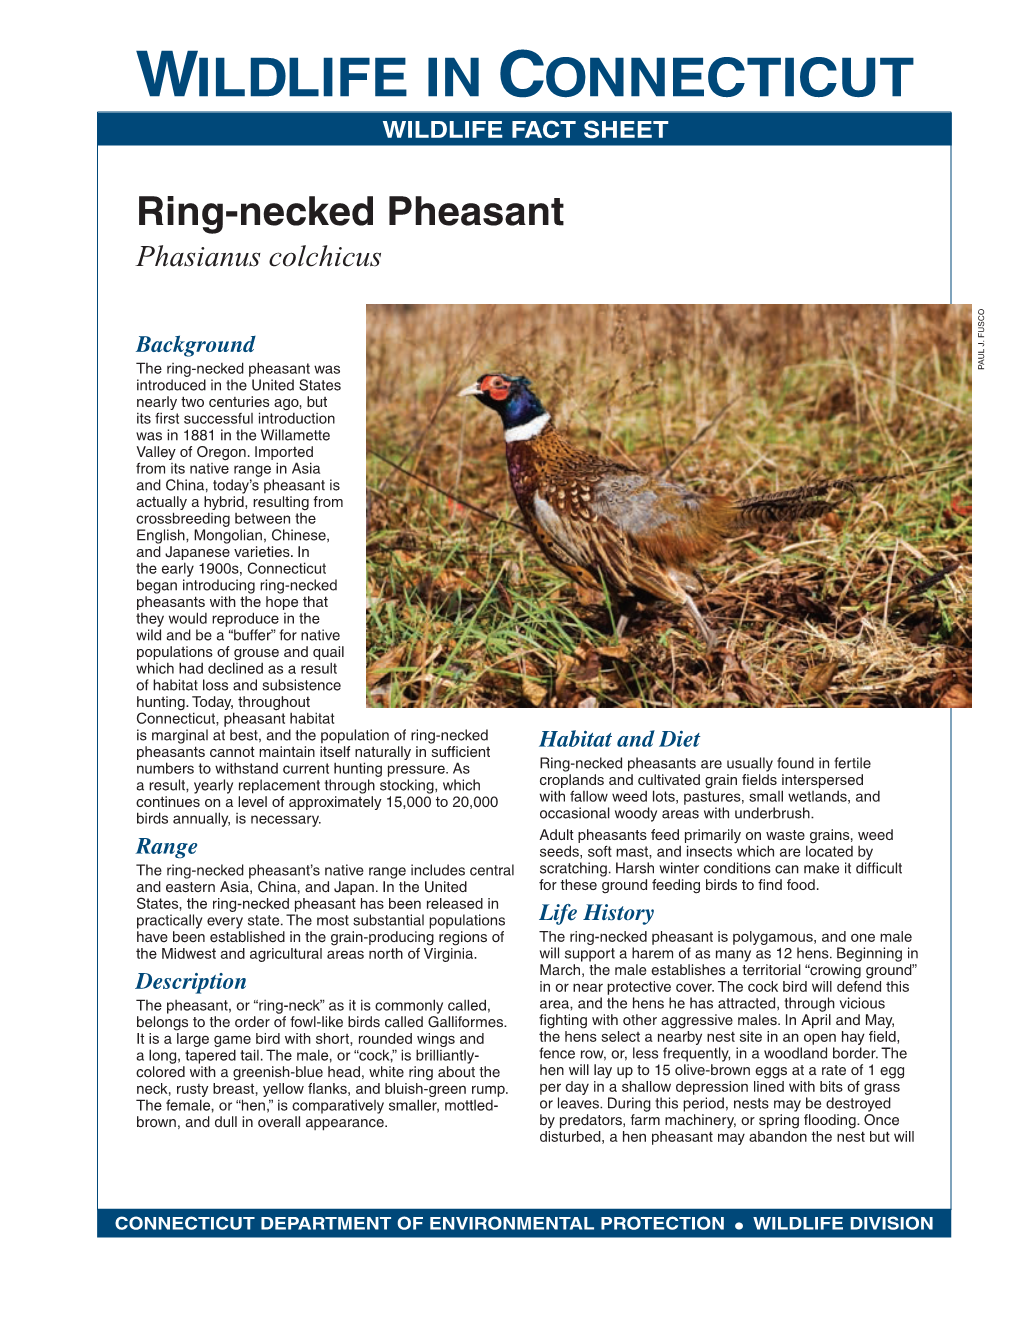 Ring-Necked Pheasant Fact Sheet